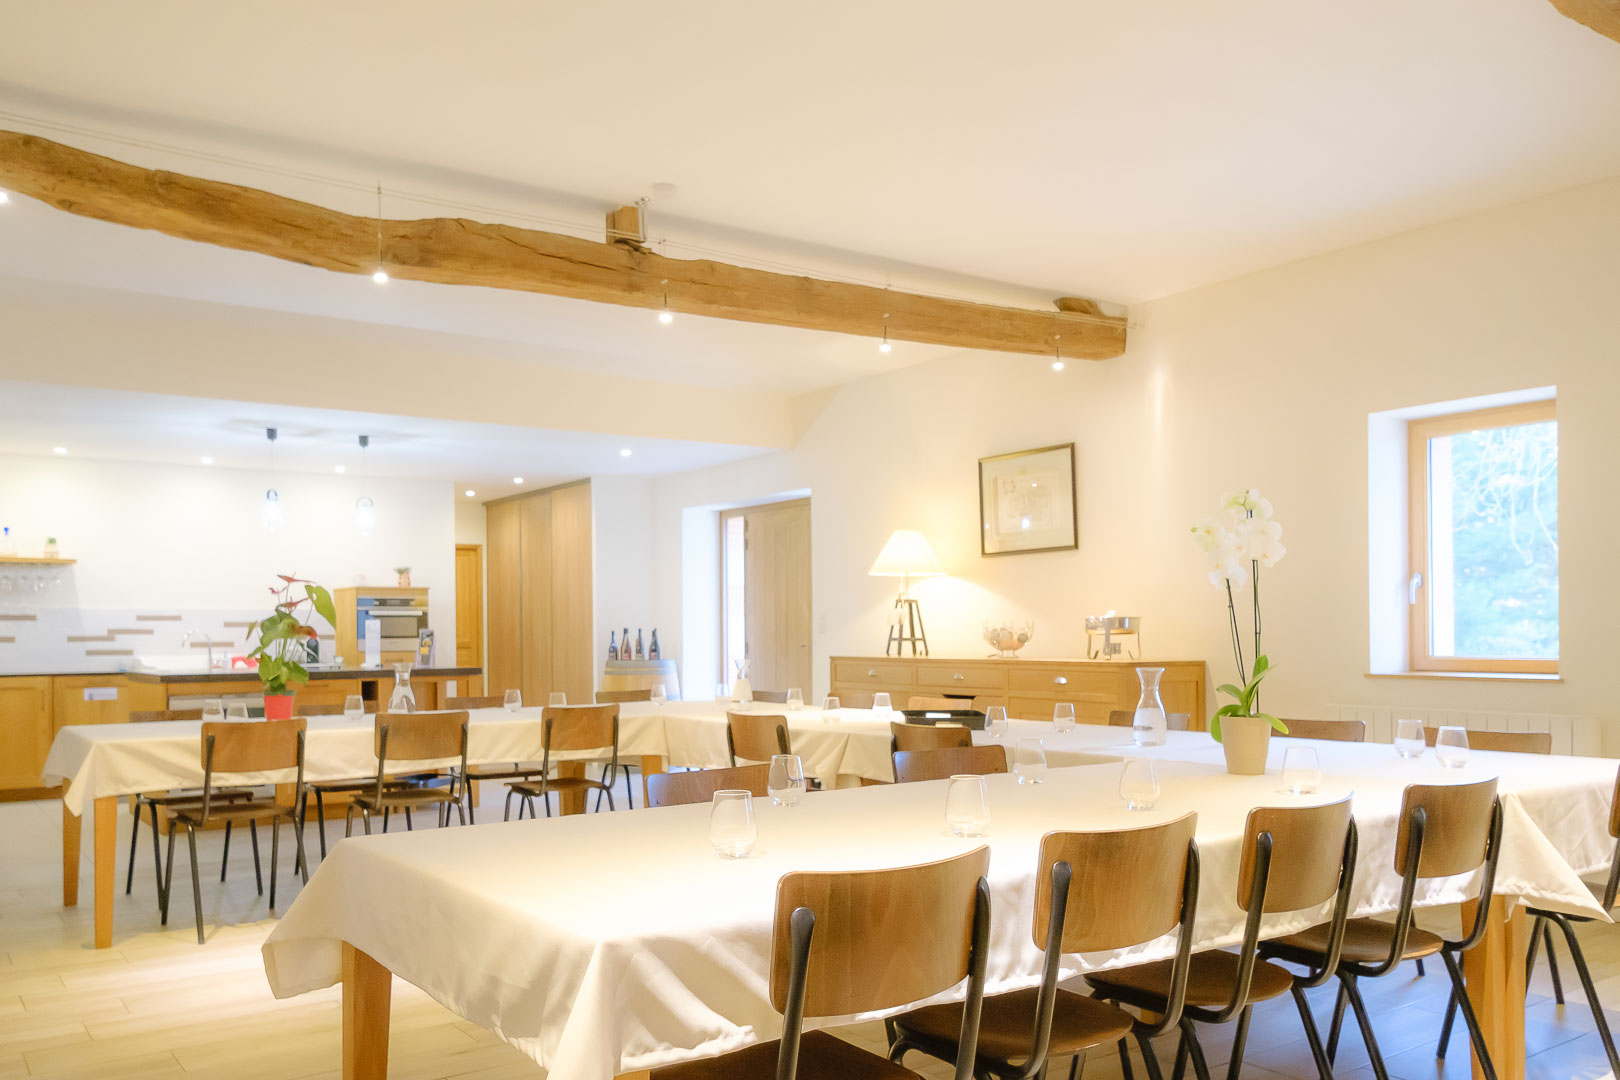 Le Chai, salle de réception pour 50 personnes, gîte de groupe au Domaine des Gauliers, entre Angers et saumur